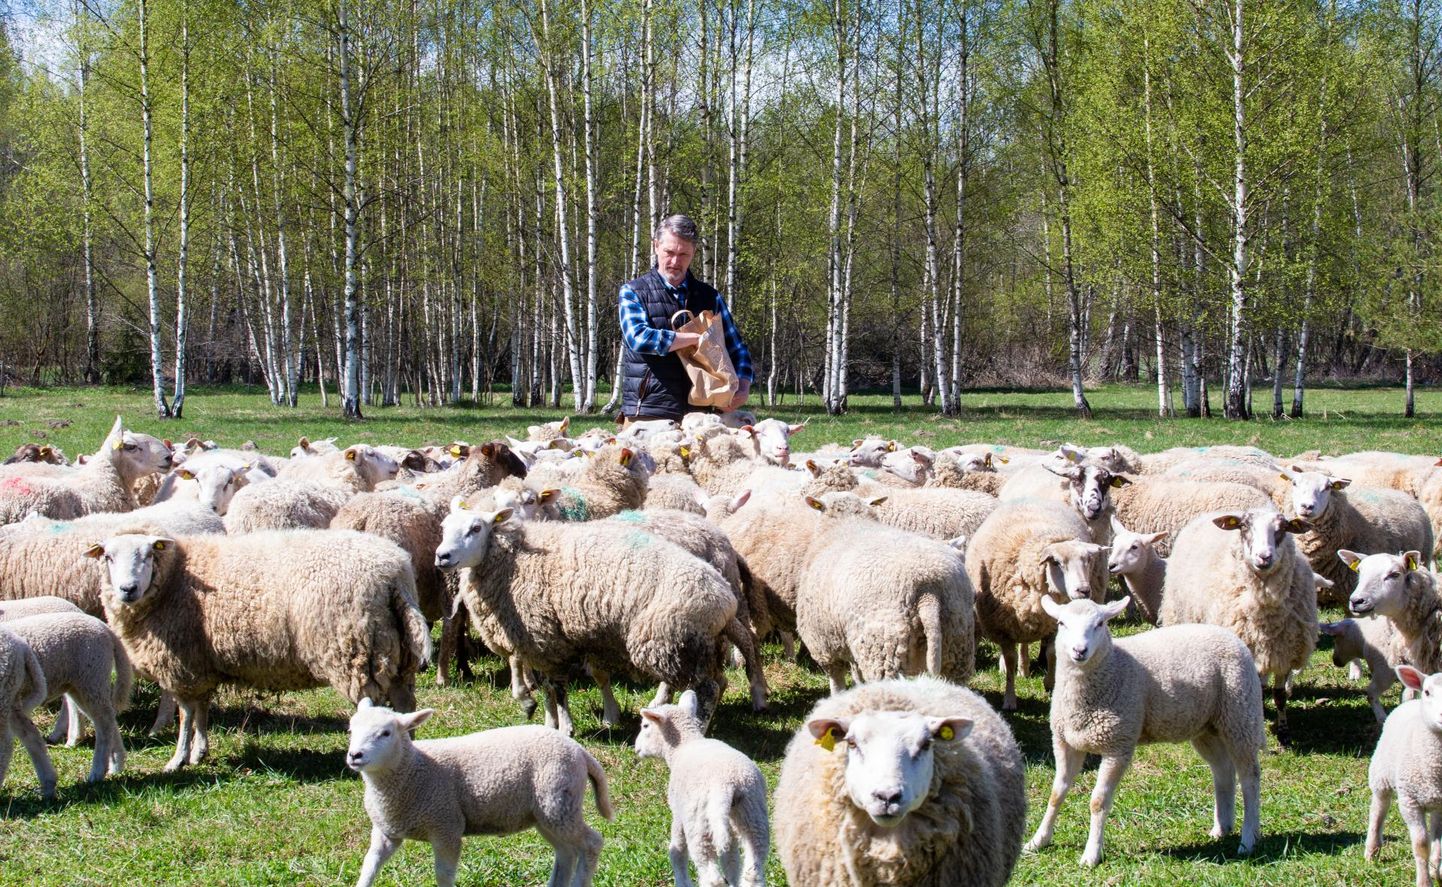 Mida teeb OÜ Karupüksid? Mõistagi kasvatab nende kudumiseks villa saamiseks lambaid, vastab Peipsiääre valla Savastvere küla Karu talus tegutseva OÜ Karupüksid juht Berni Valge.